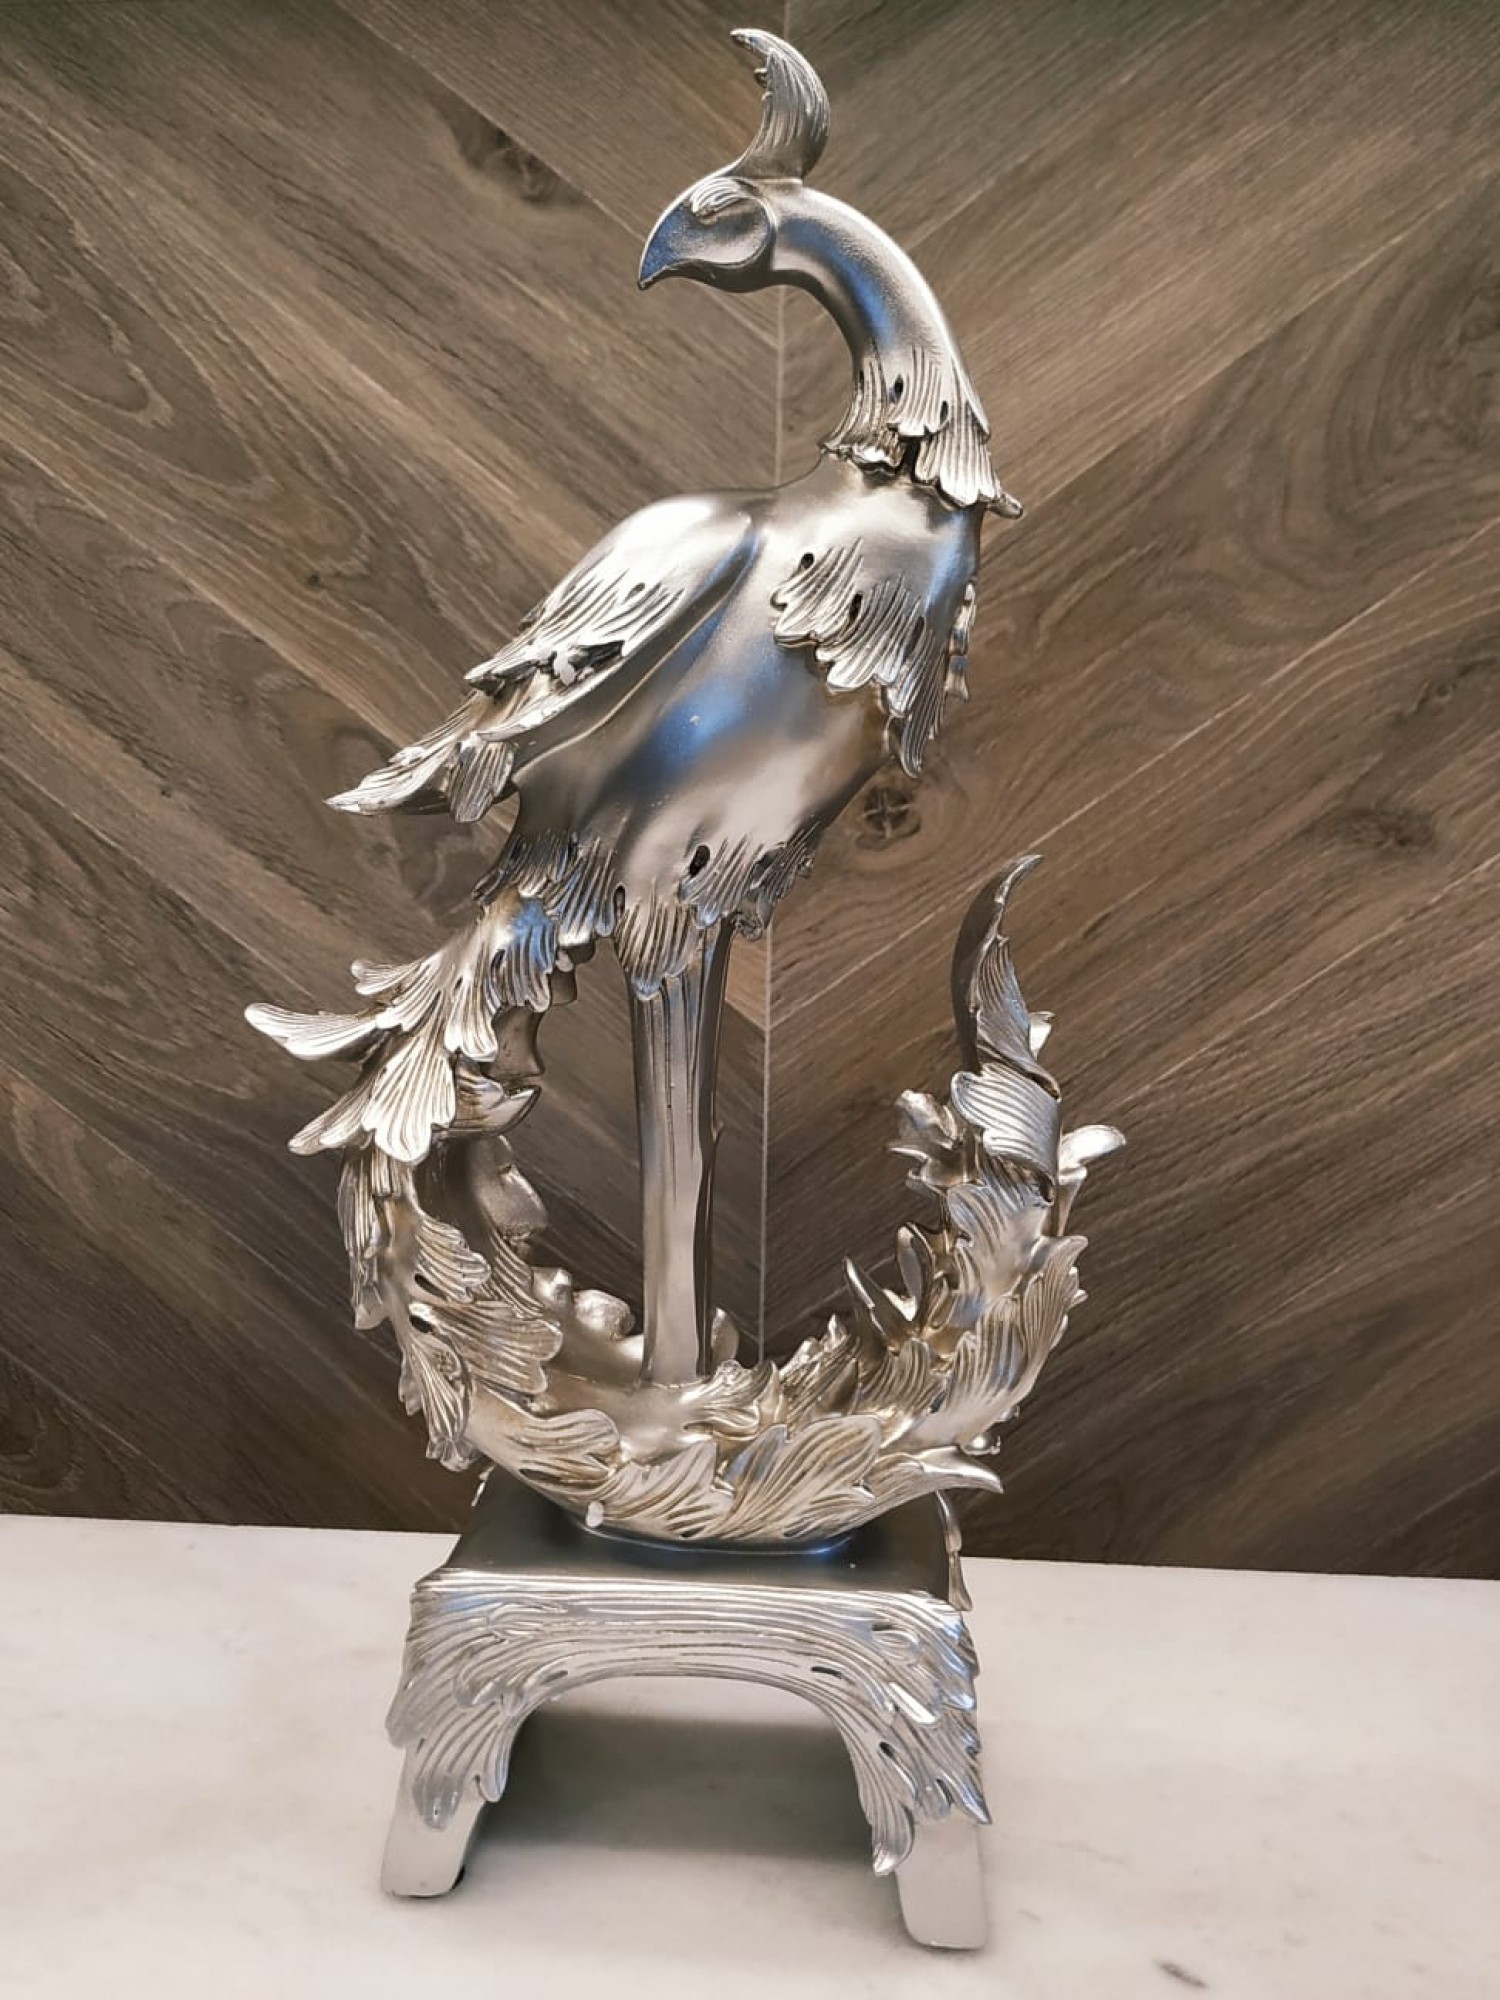 Статуэтка "Феникс- птица Возрождения" - символ вечного обновления, удачи и успеха